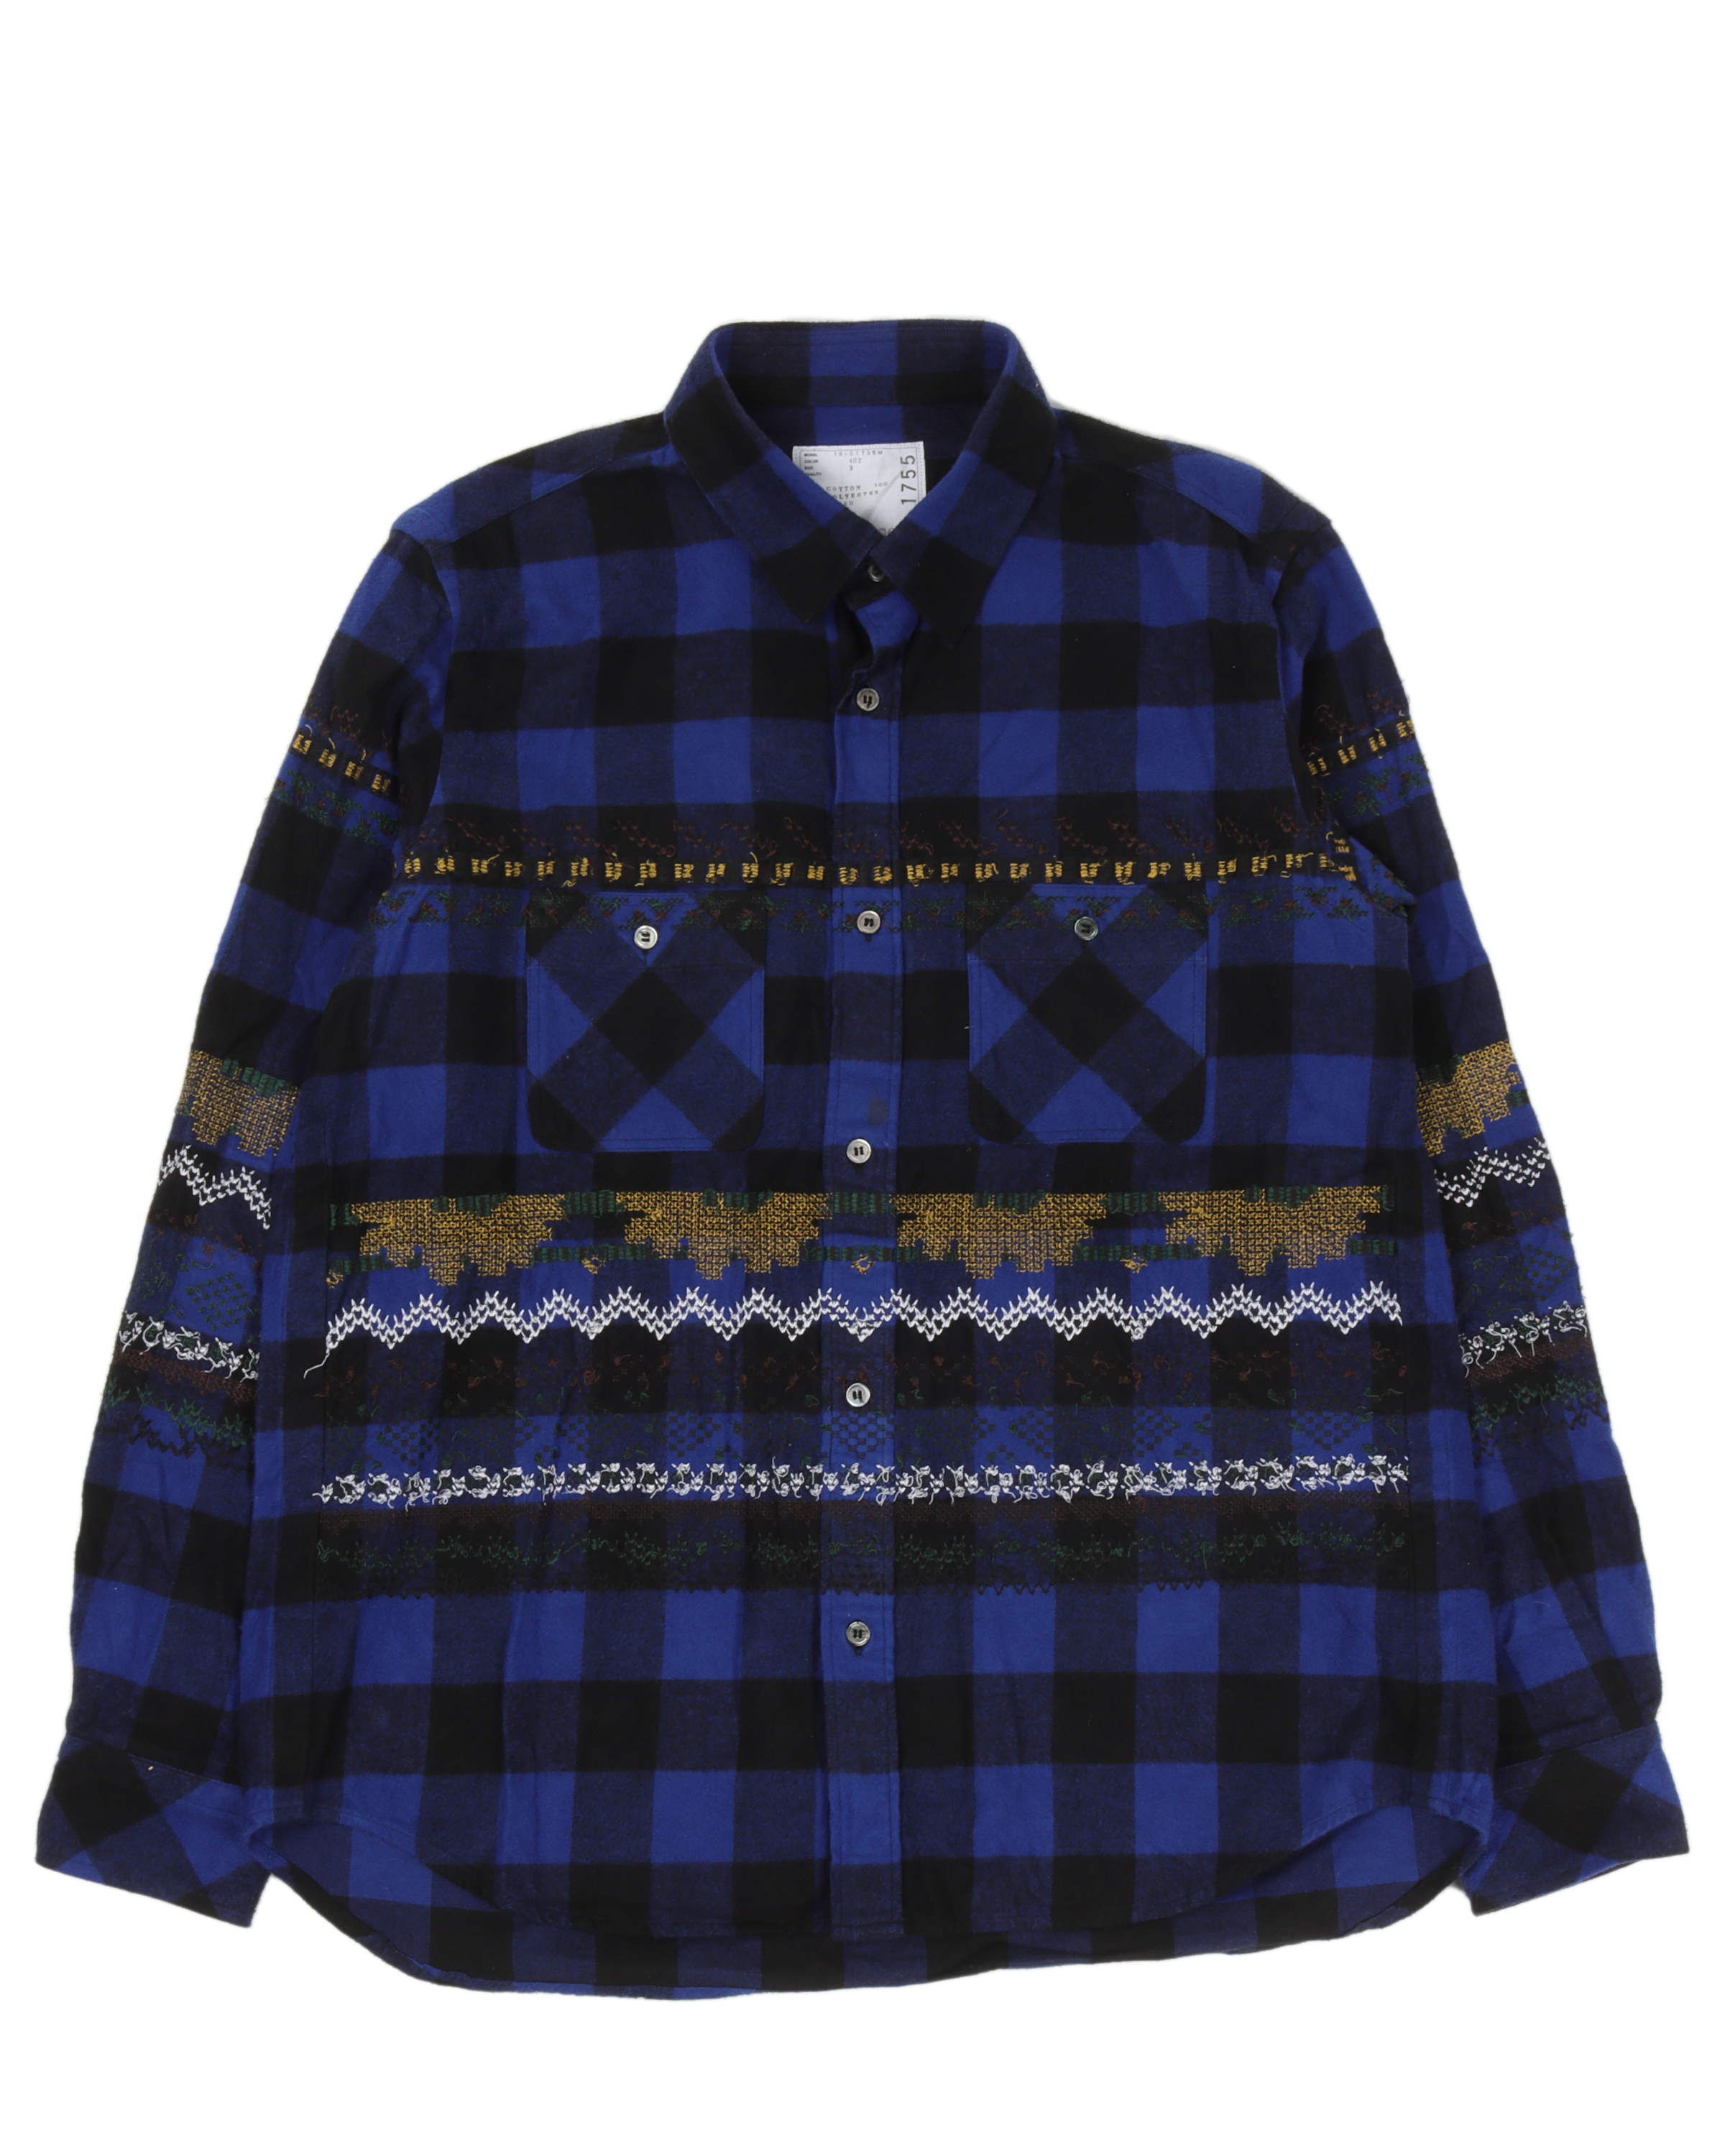 Sacai Embroidered Gingham Check Flannel Shirt